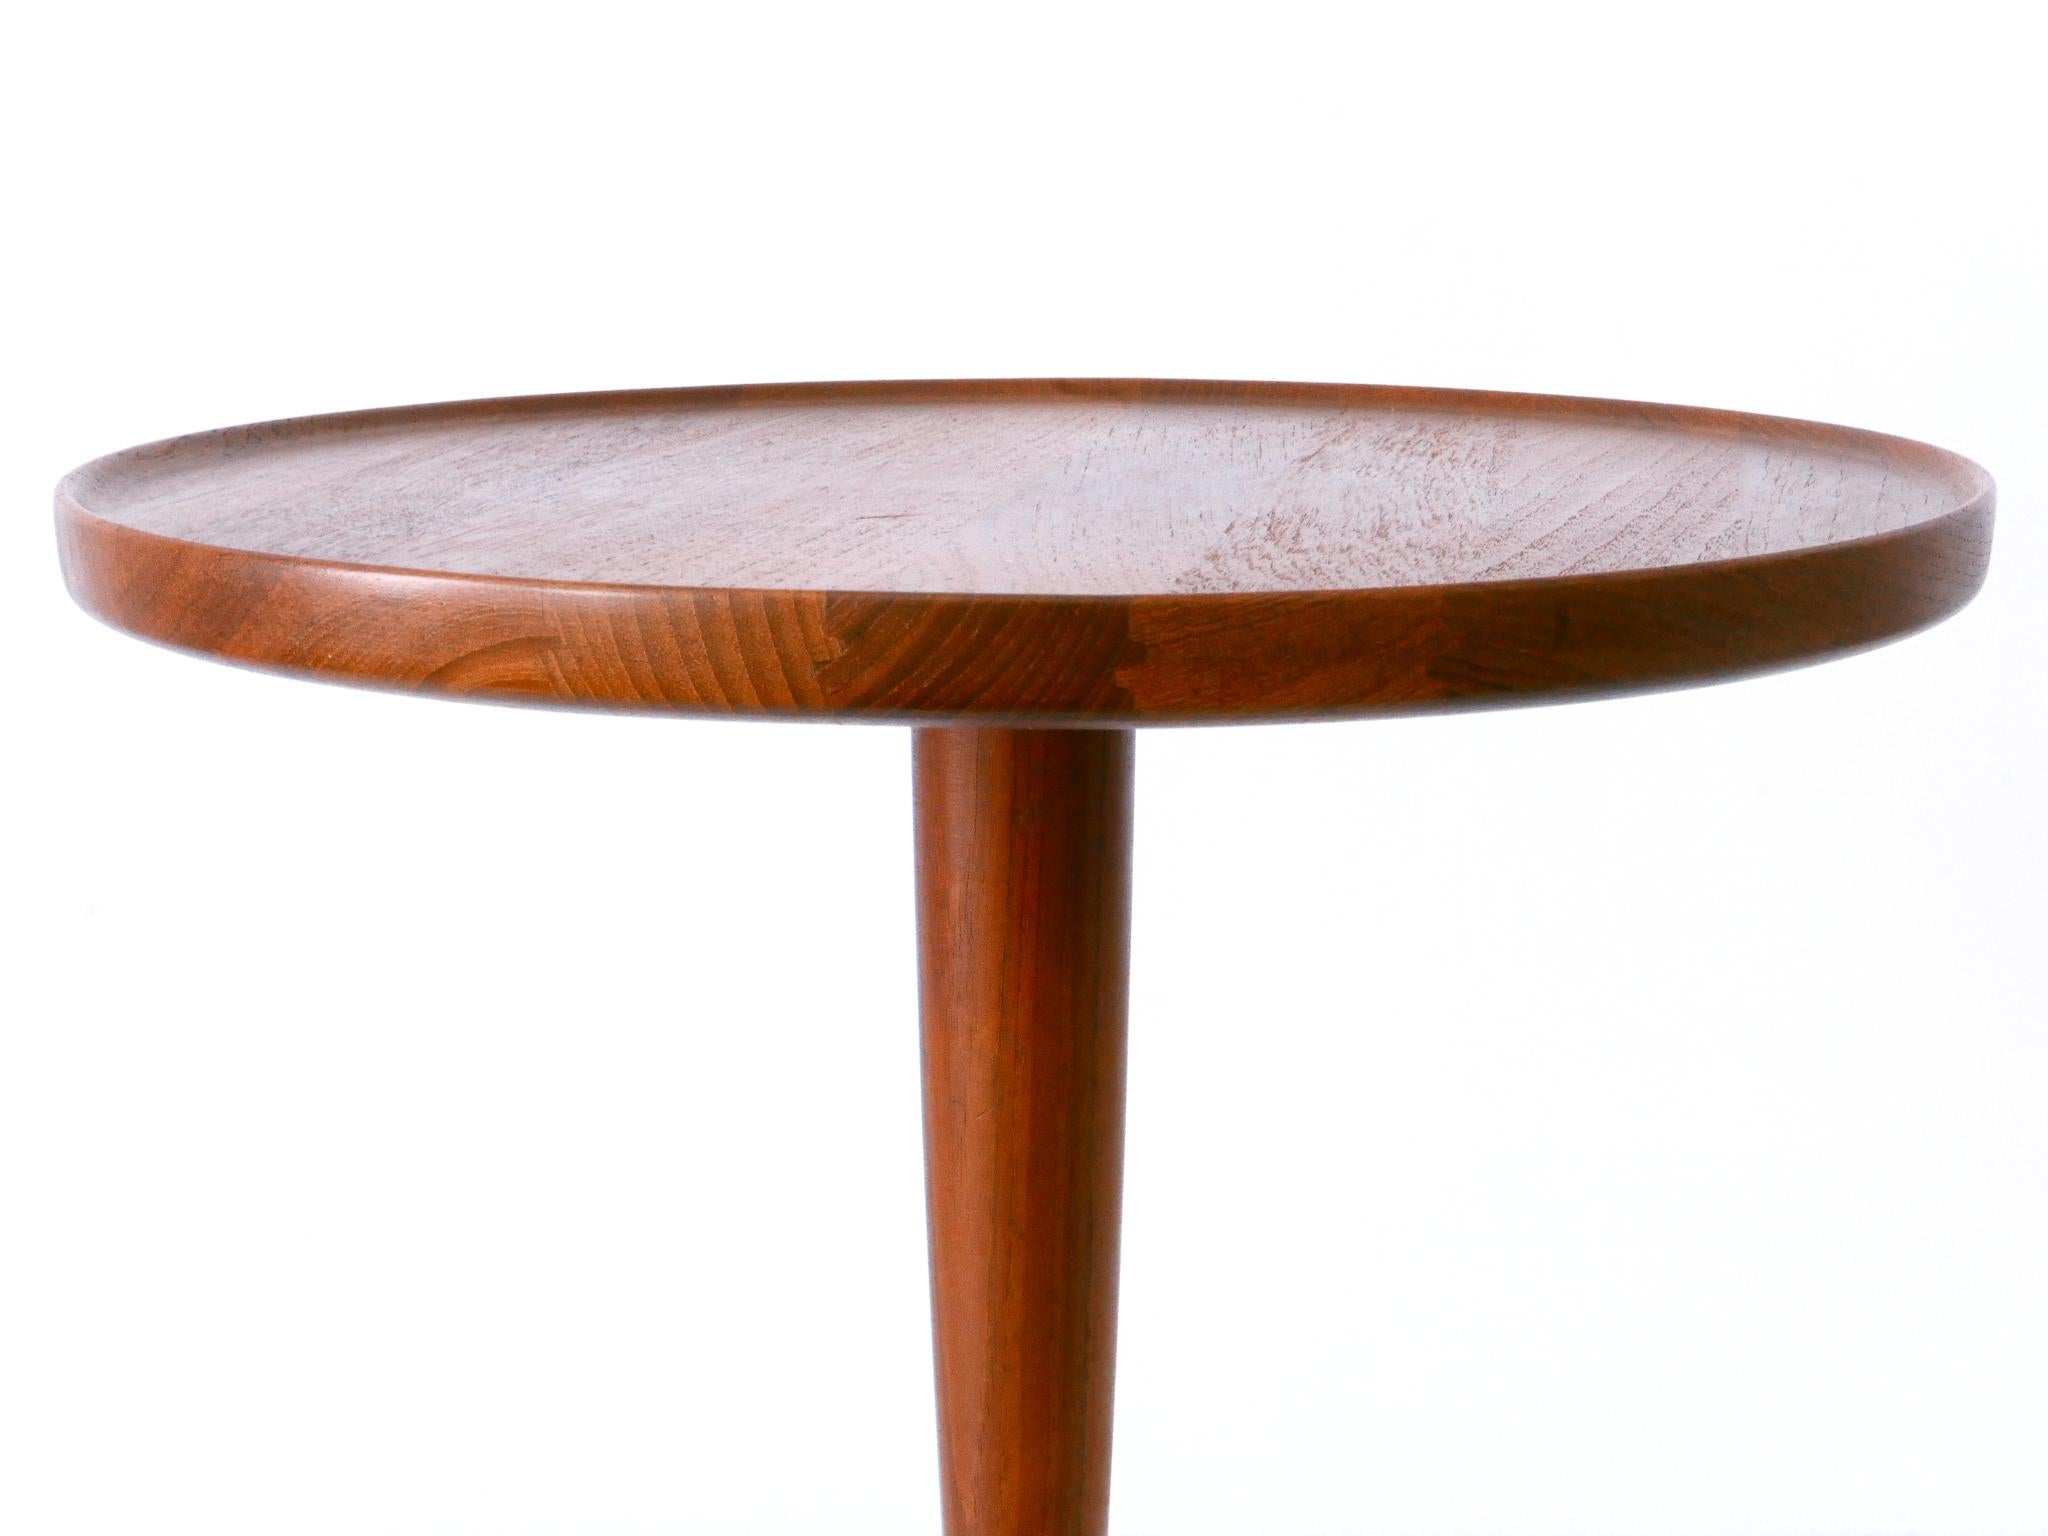 Elegant Mid-Century Modern Teak Side Table by Hans C. Andersen for Artek 1960s For Sale 5